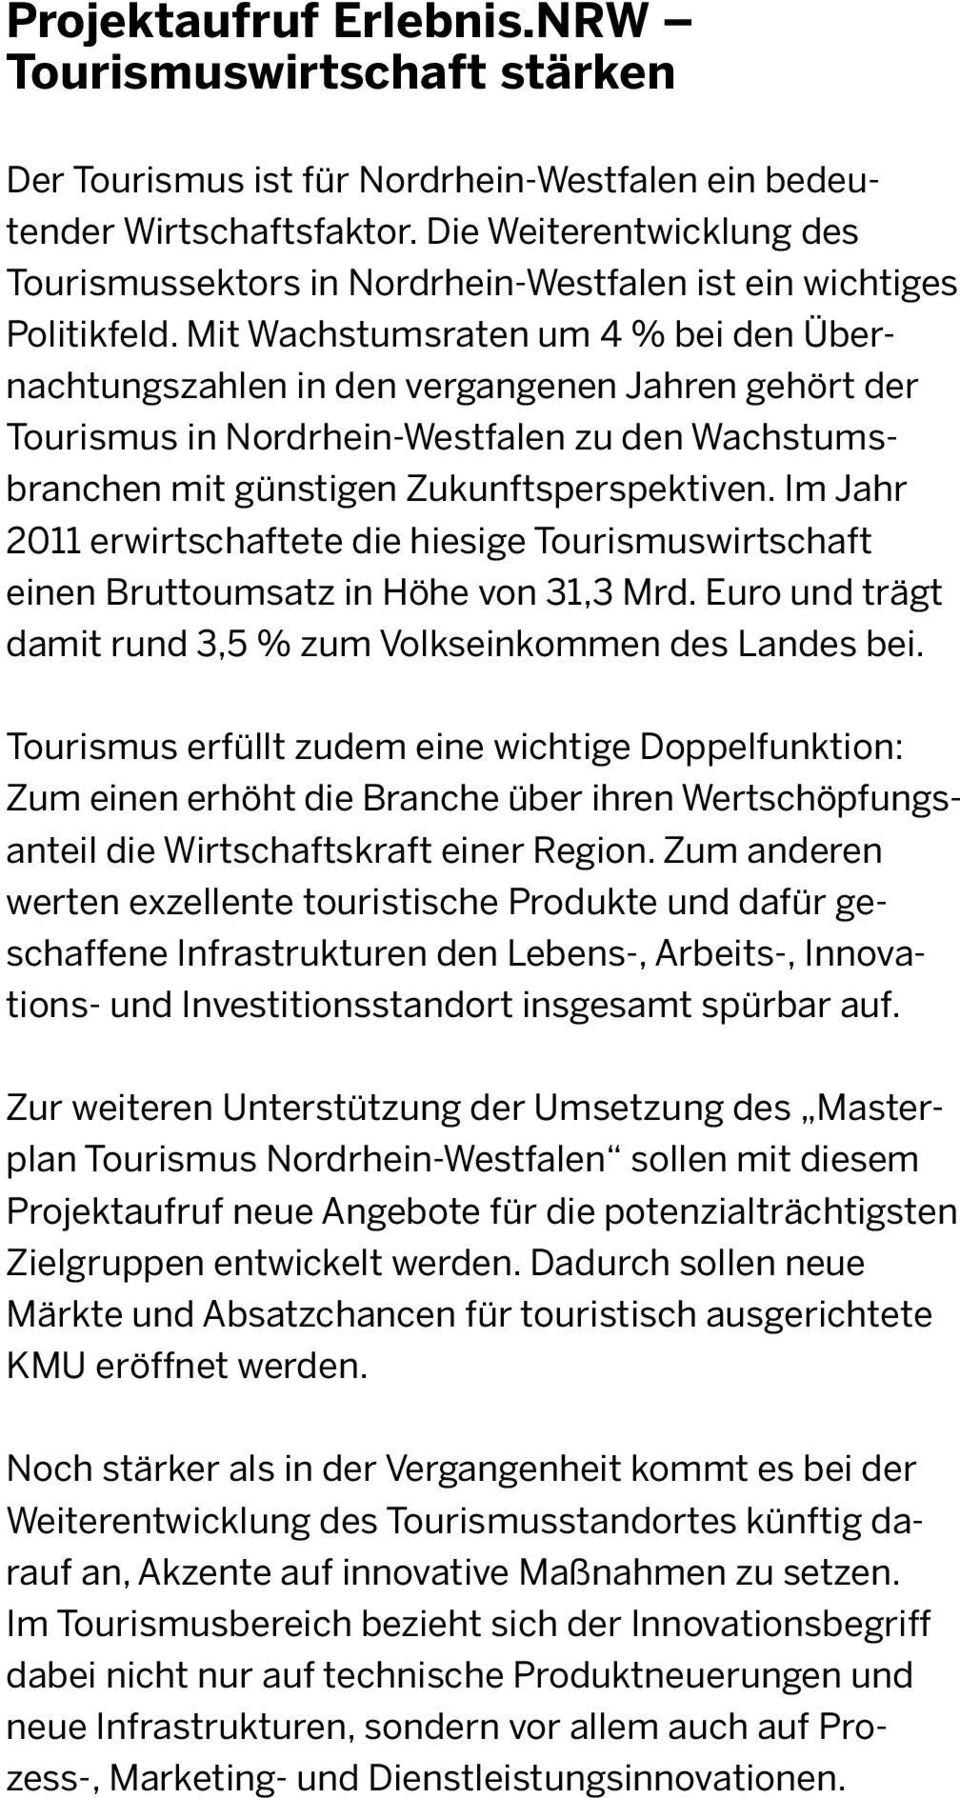 Mit Wachstumsraten um 4 % bei den Übernachtungszahlen in den vergangenen Jahren gehört der Tourismus in Nordrhein-Westfalen zu den Wachstumsbranchen mit günstigen Zukunftsperspektiven.